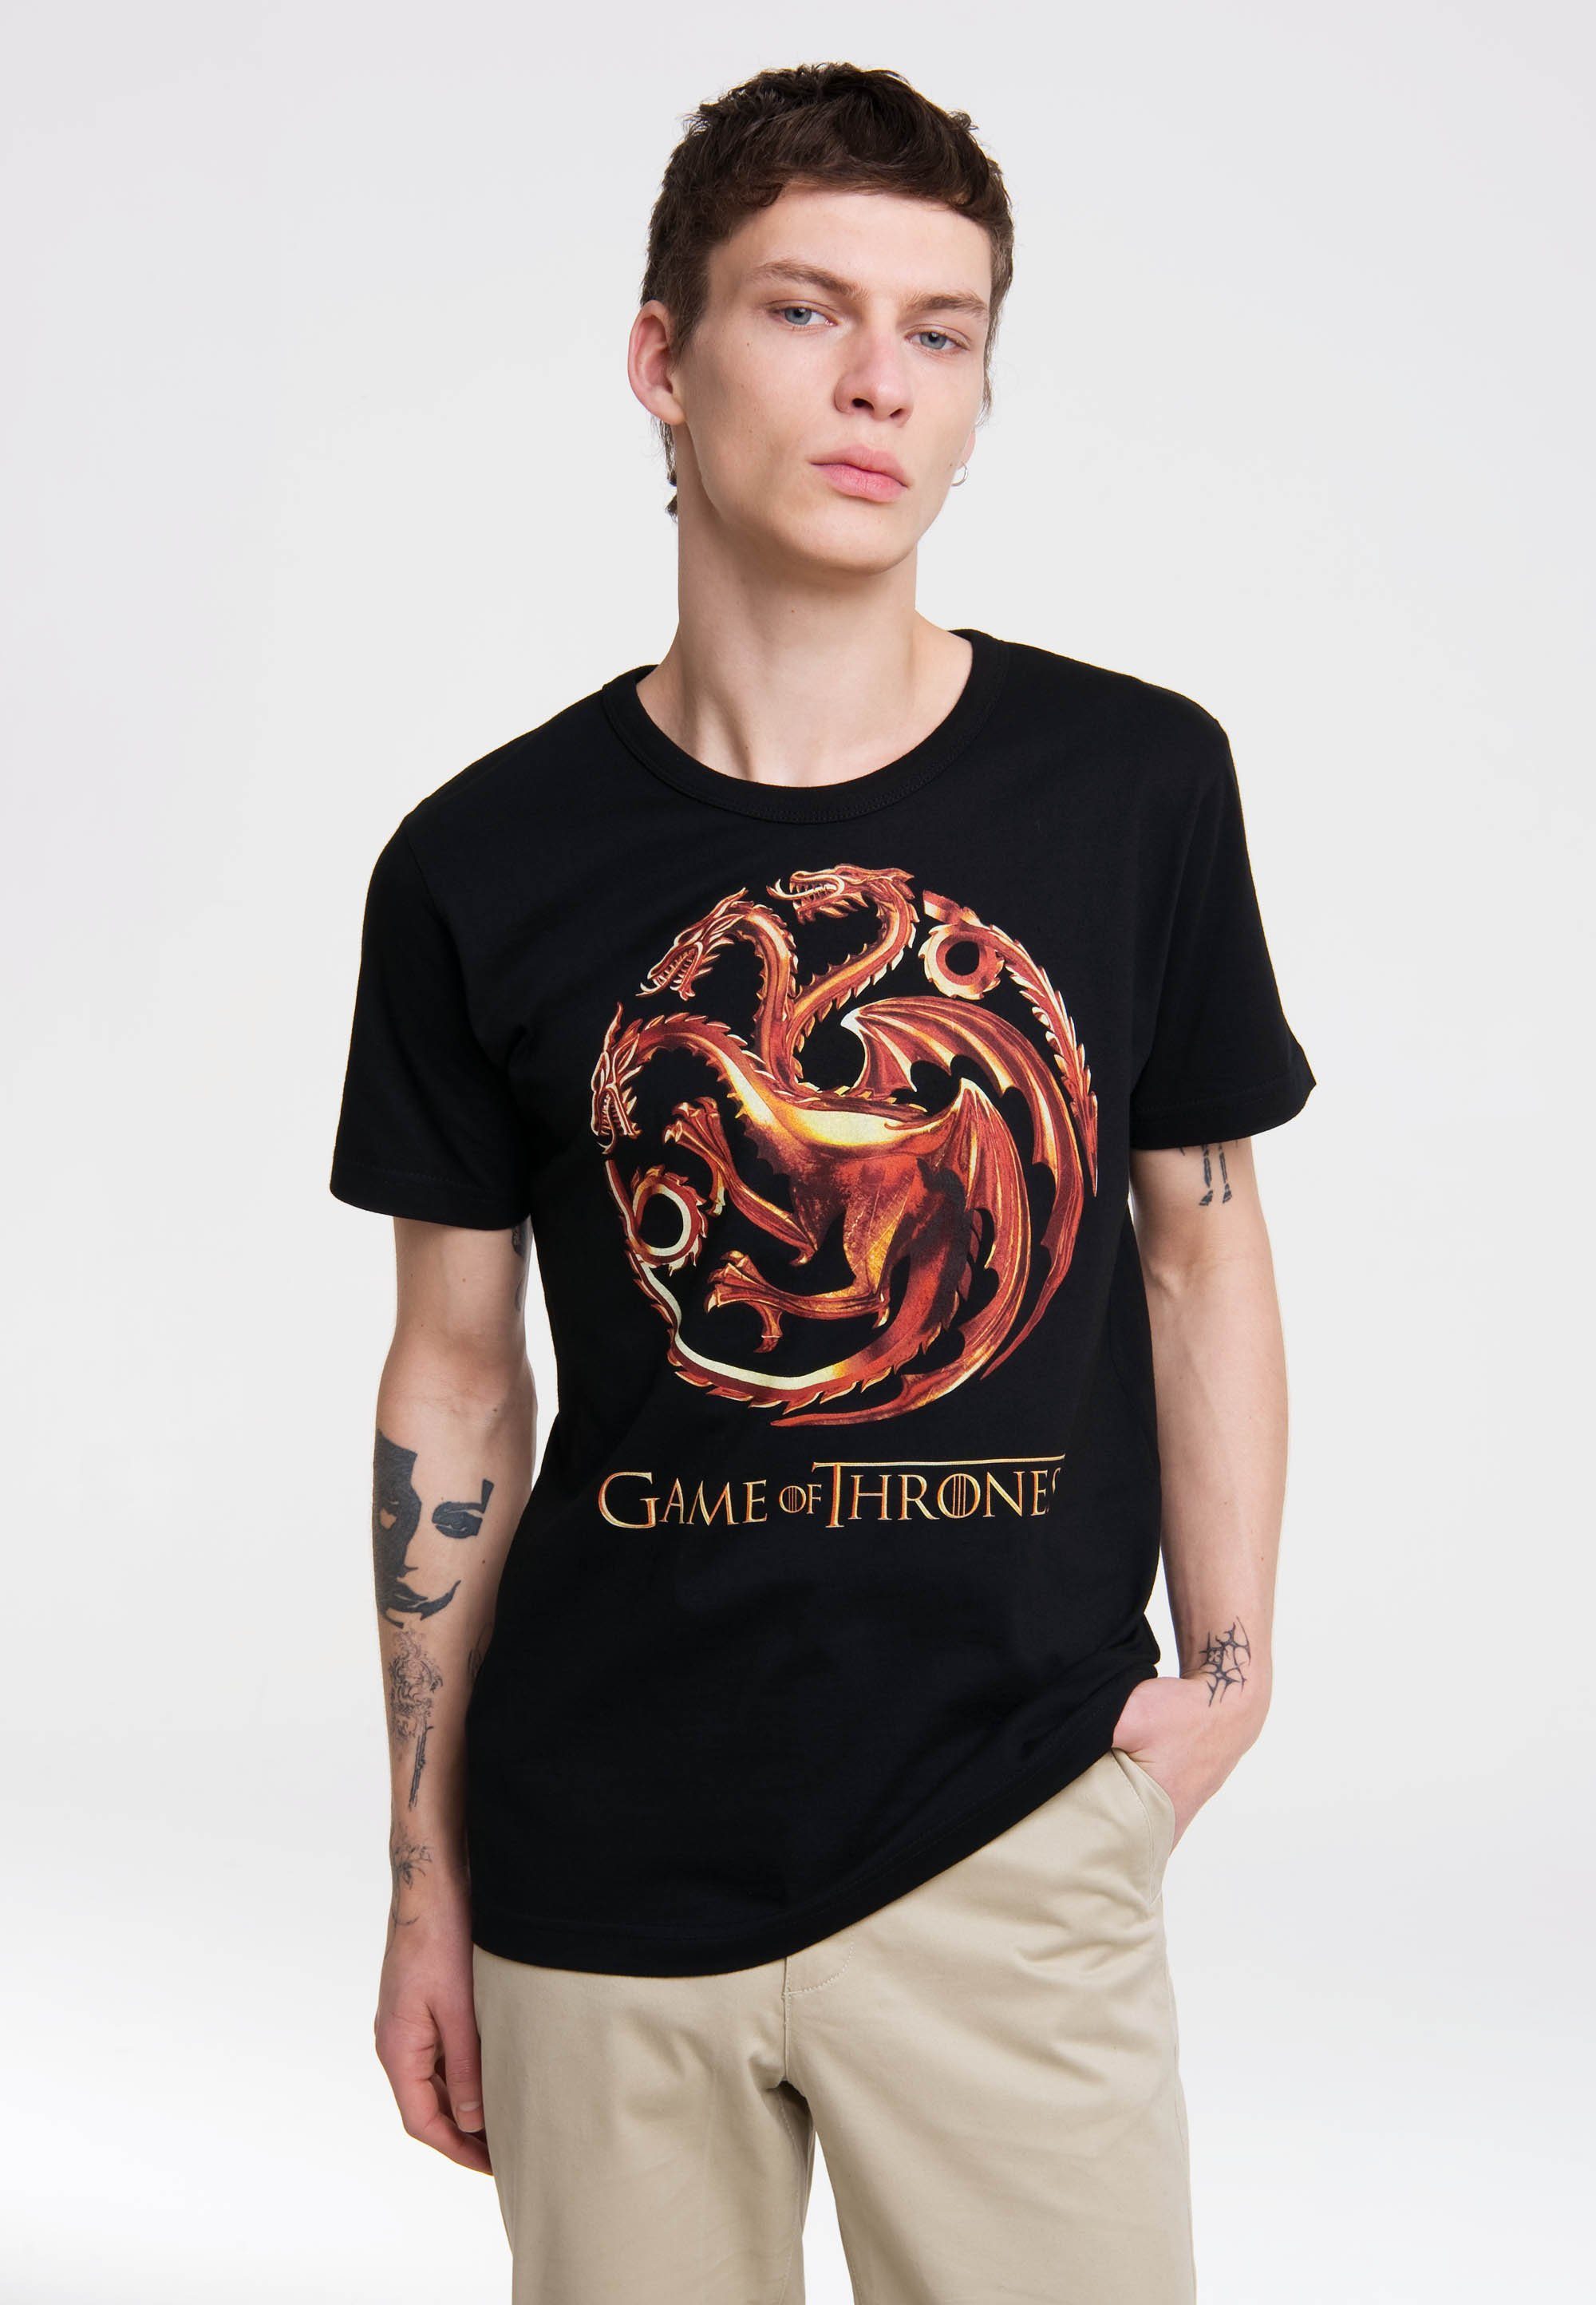 LOGOSHIRT Targaryen Thrones Of T-Shirt Game - großem Frontprint mit